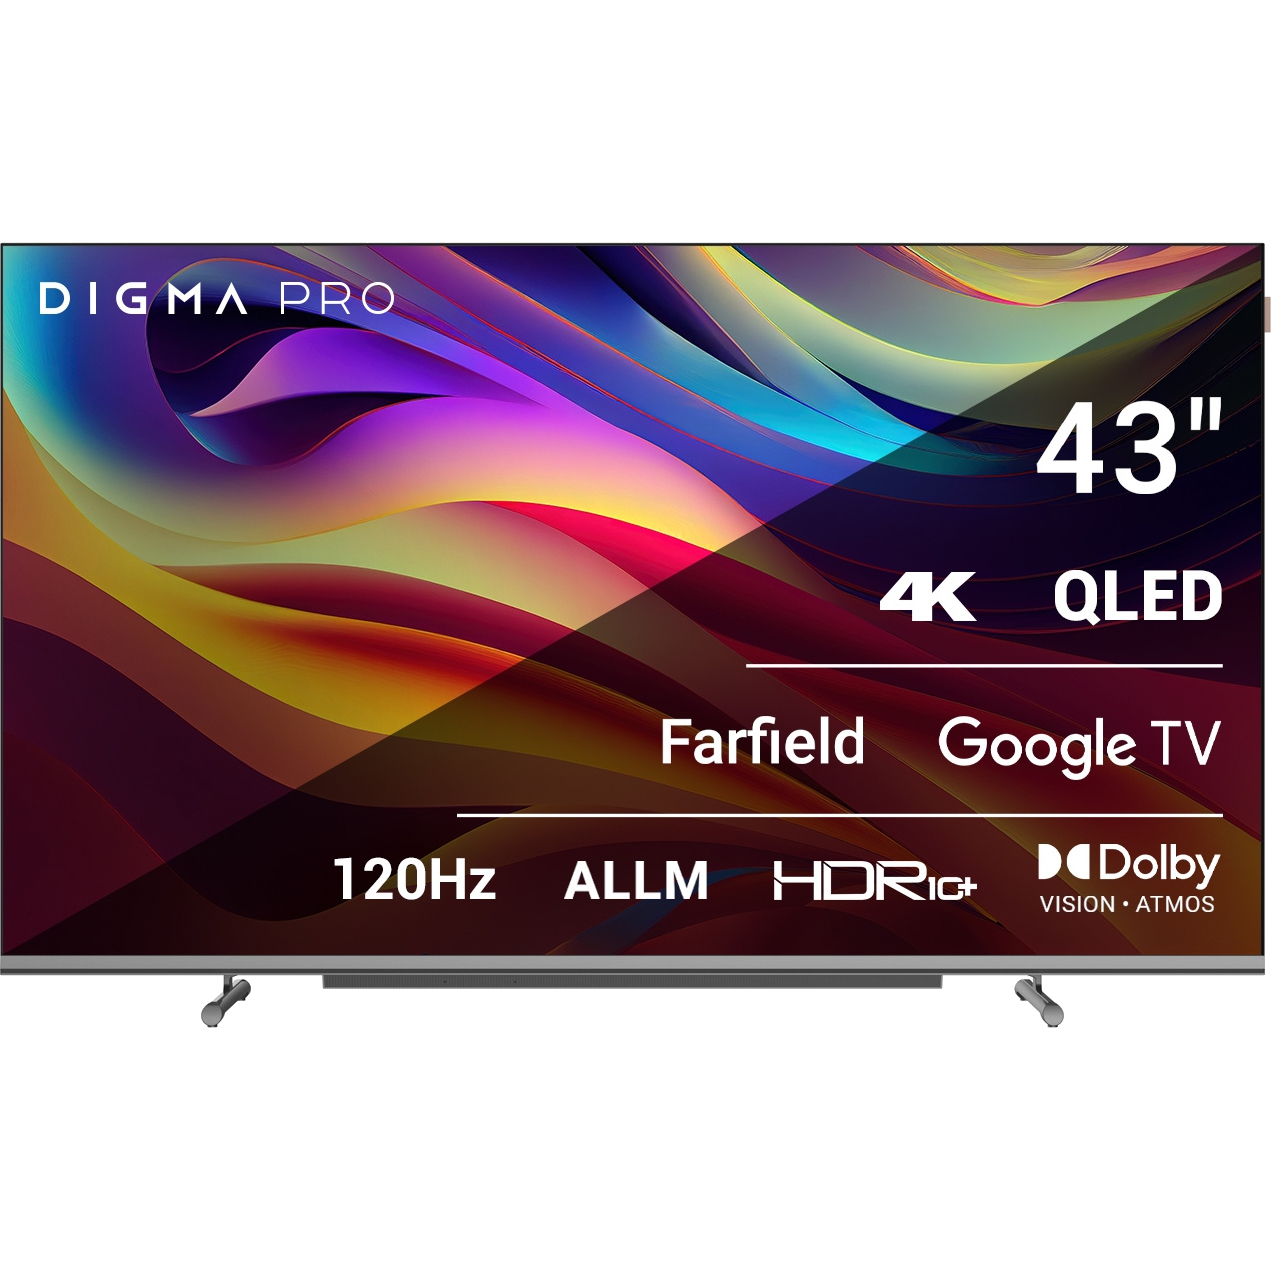 Телевизор Digma Pro 43 43L телевизор digma pro qled 43l